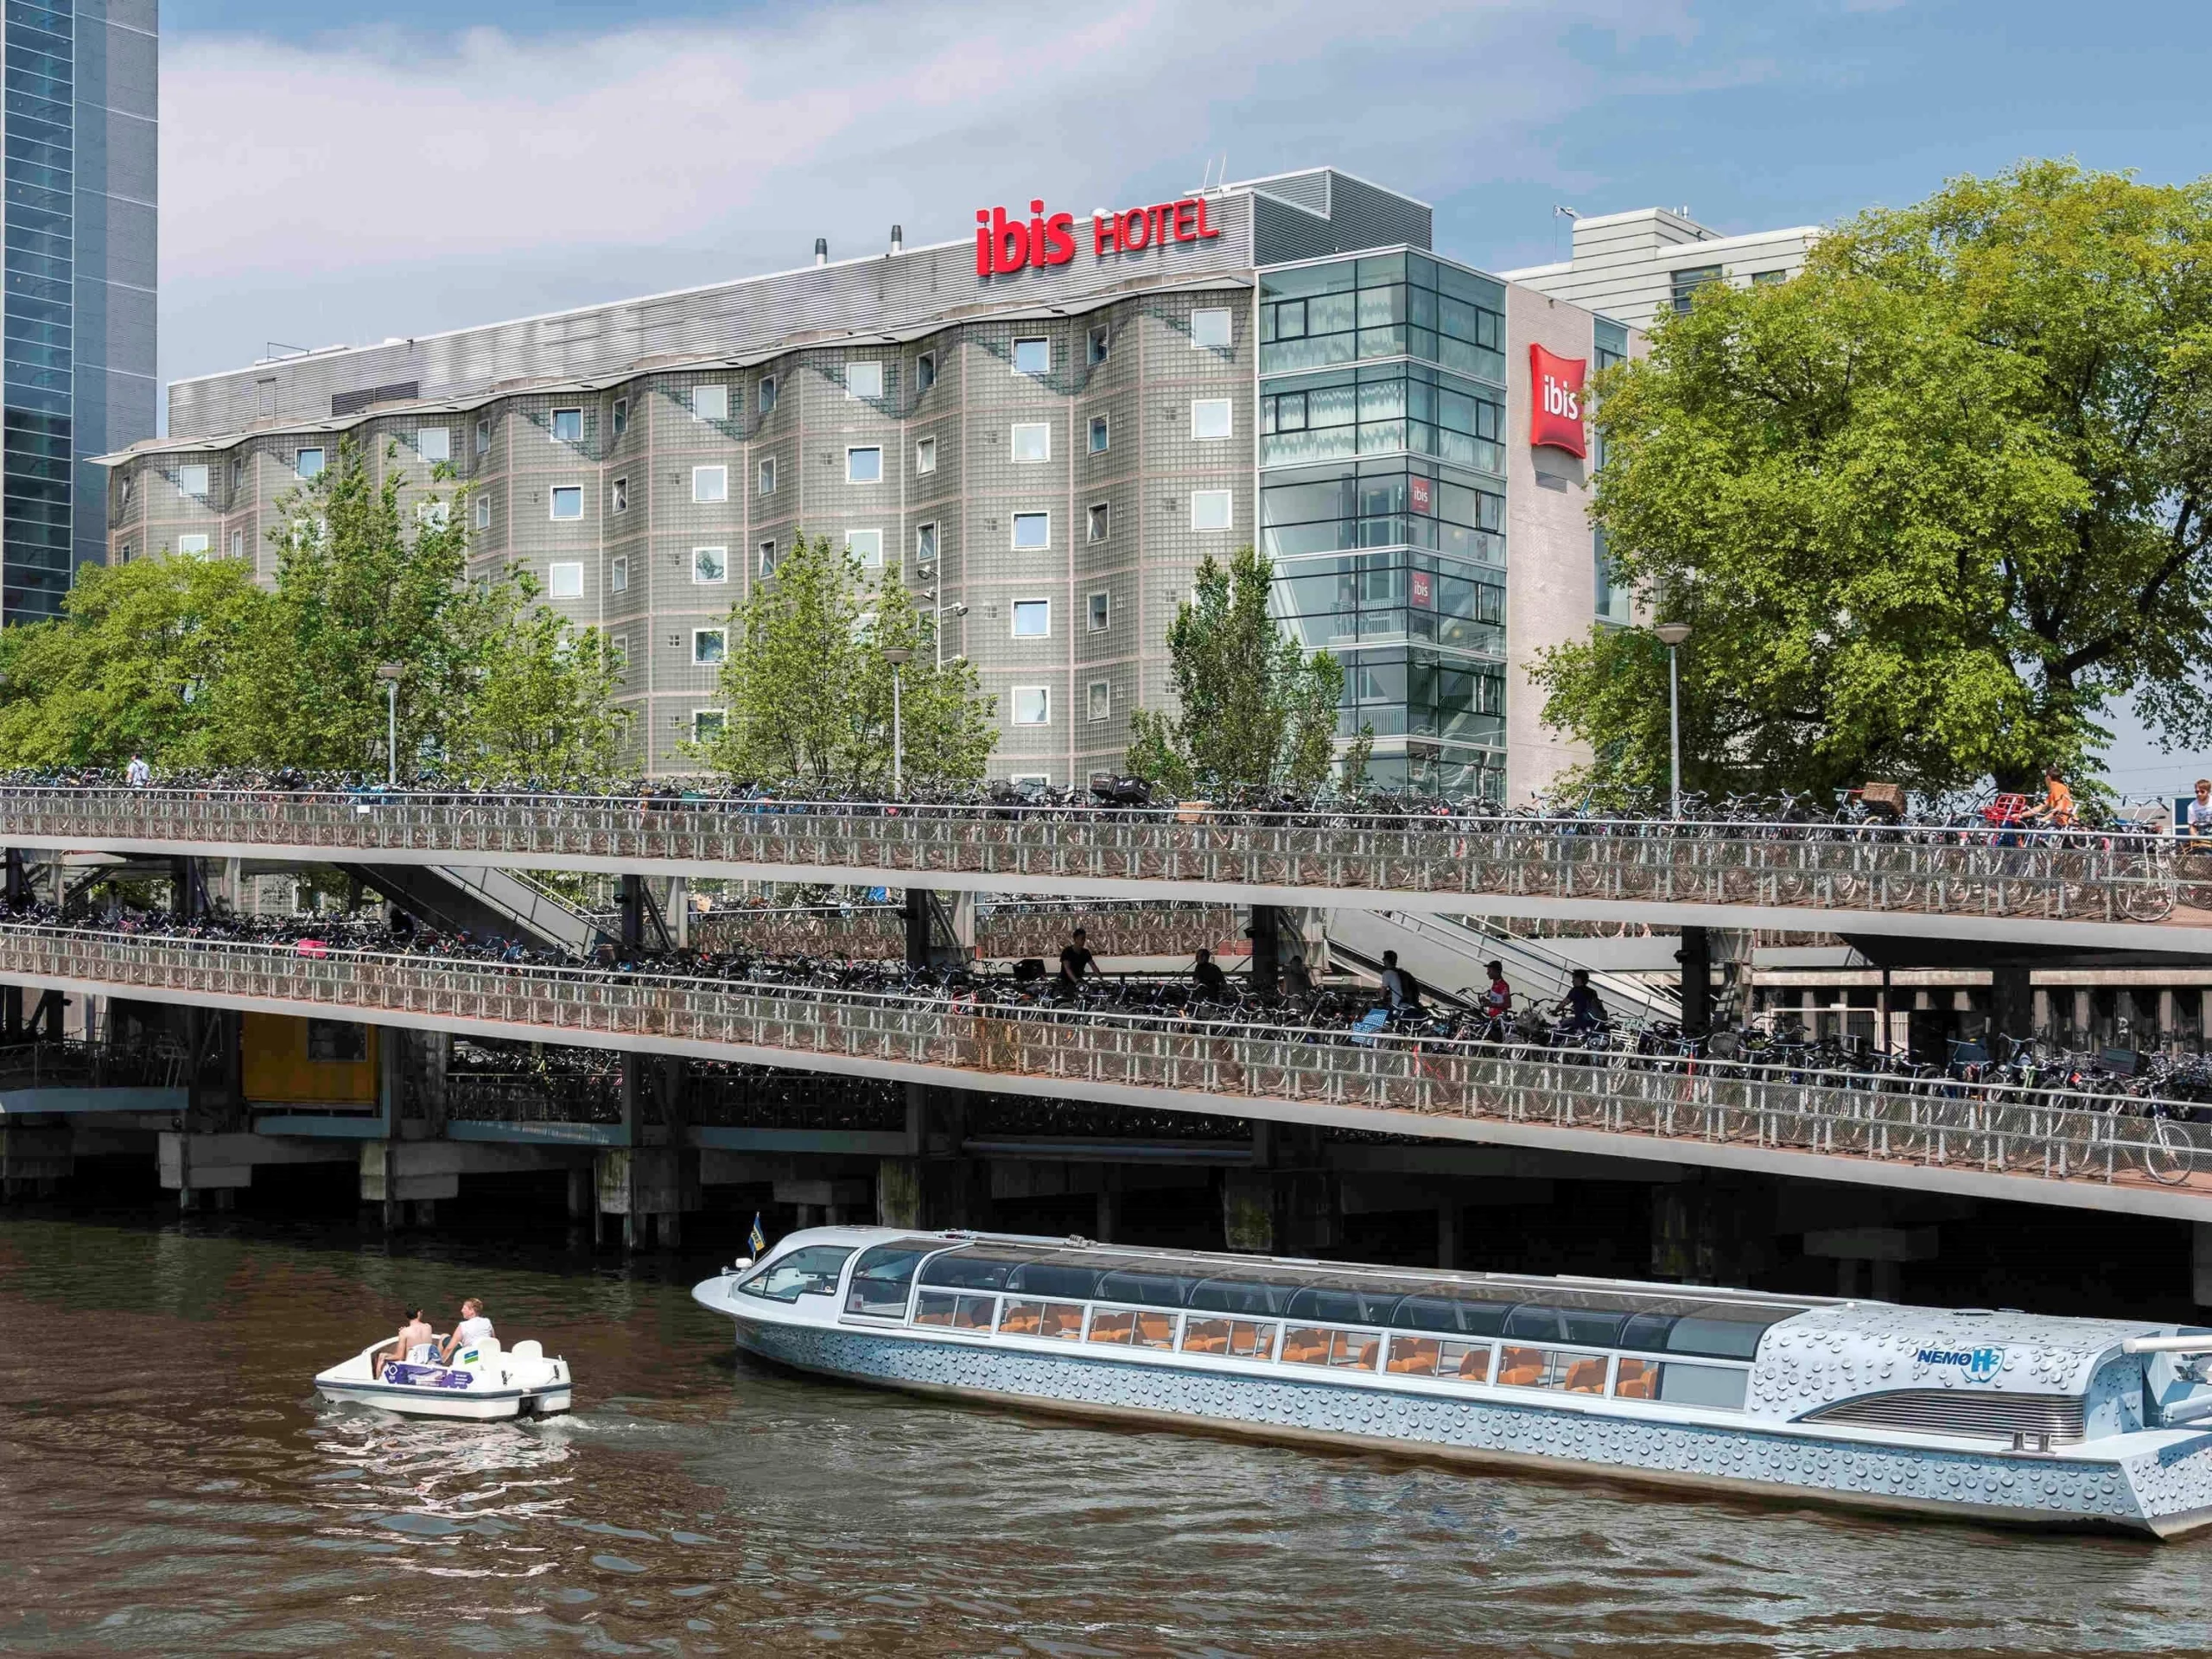 Ibis Hotel Amsterdam - Aussenansicht